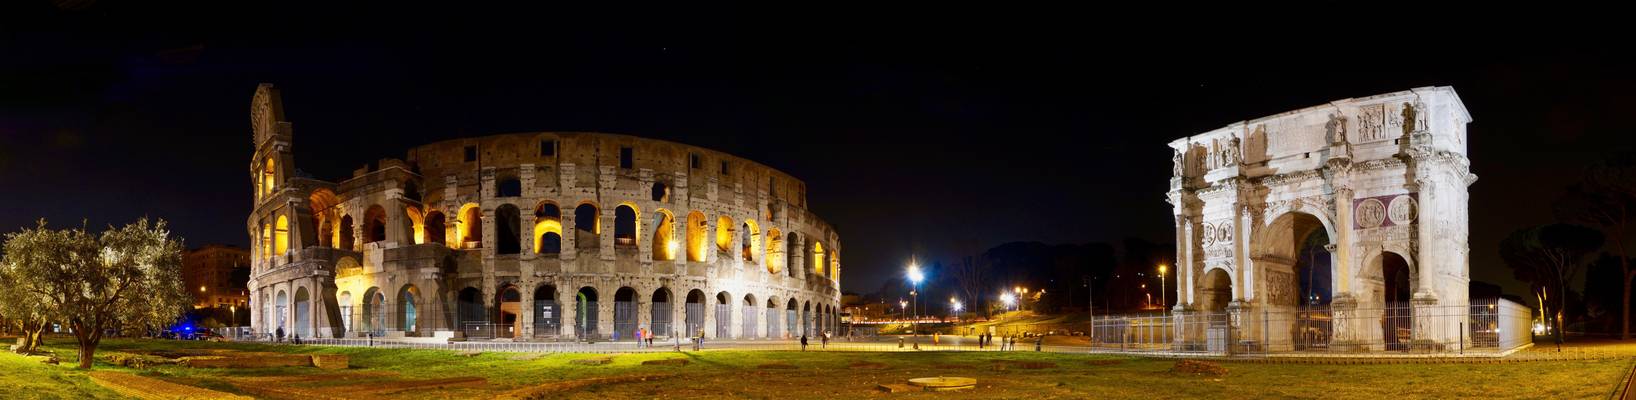 Colosseo & Arco di Costantino, Roma, Italia